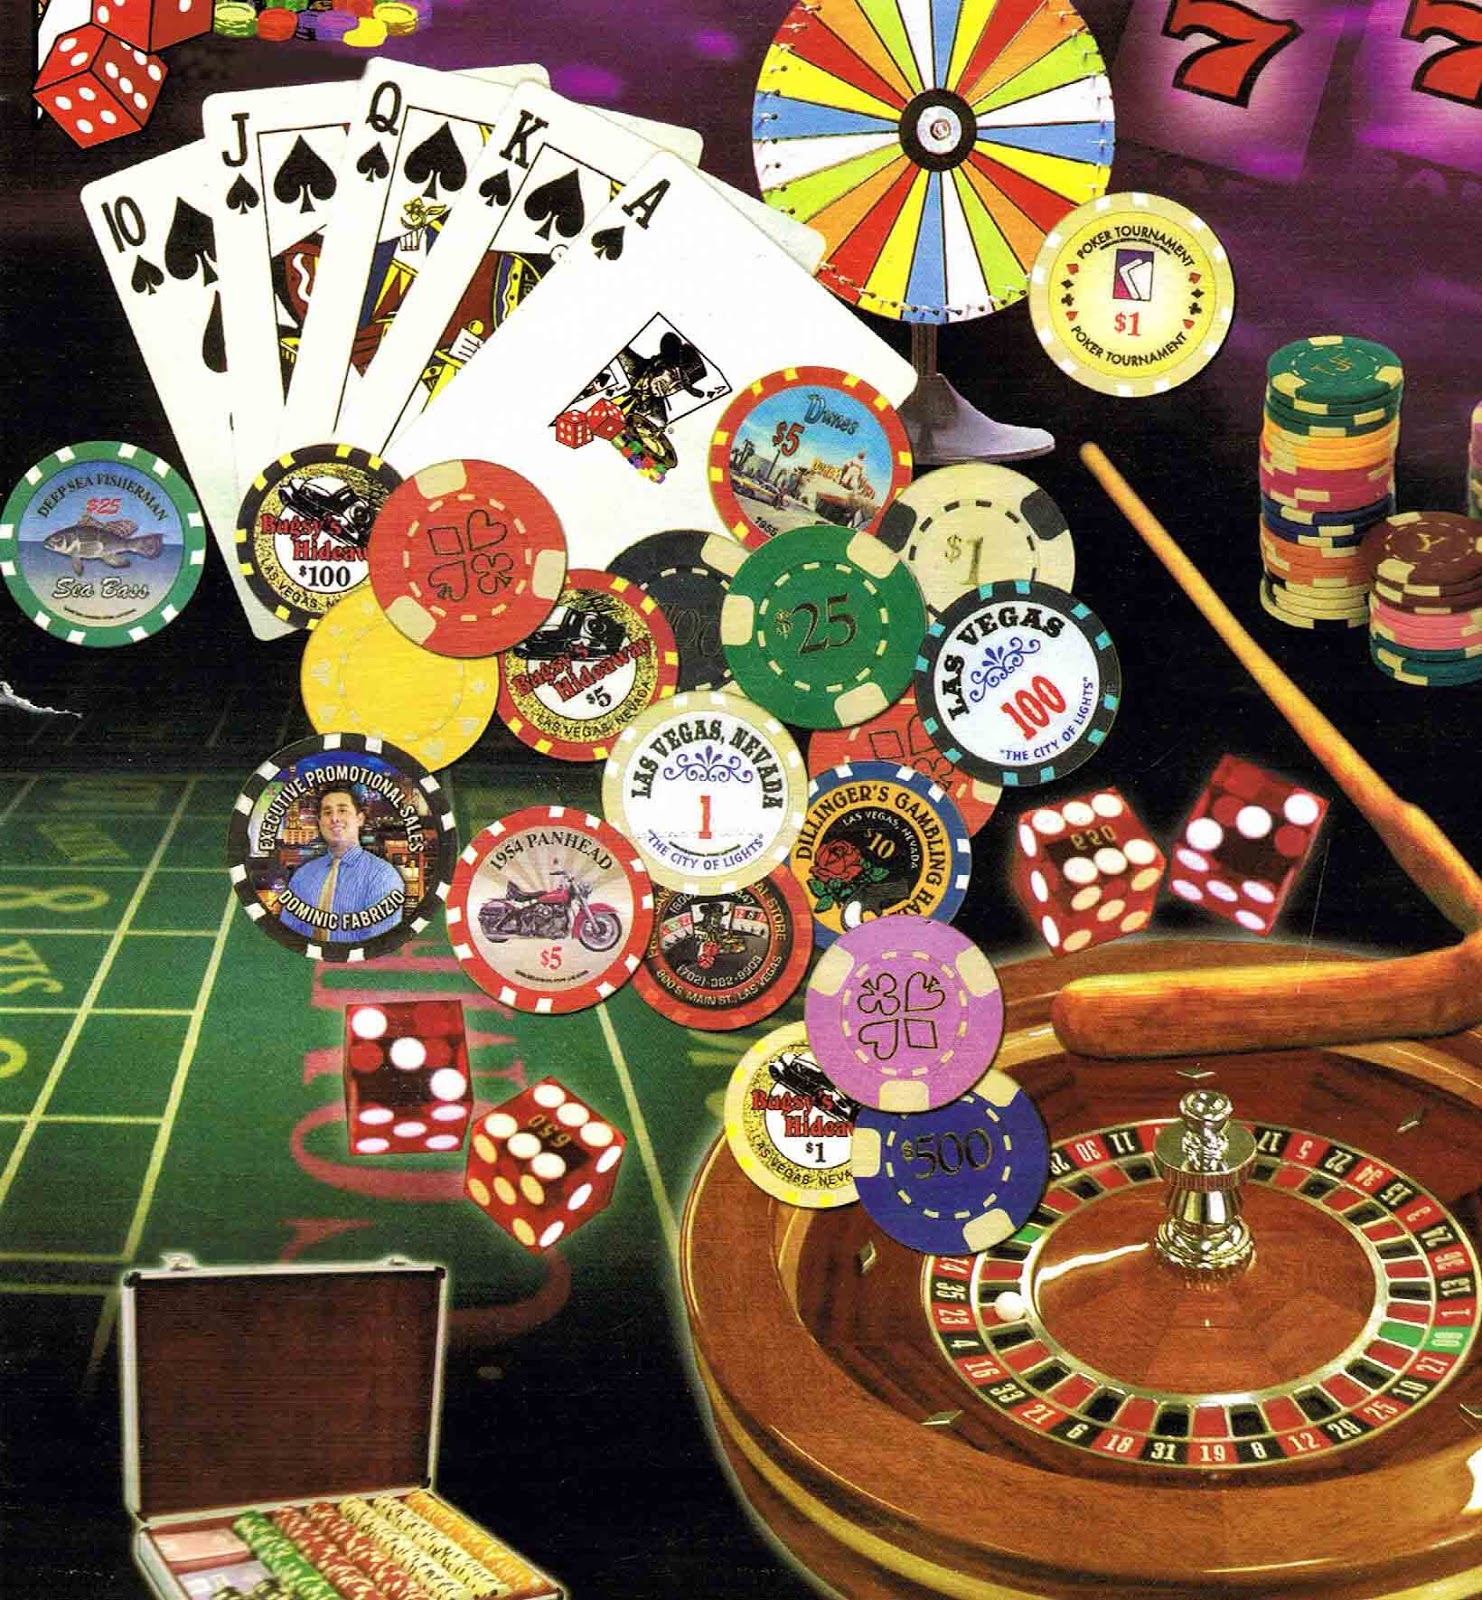 fond d'écran de jeu,jeux,jeux d'argent,casino,poker,jeu de cartes